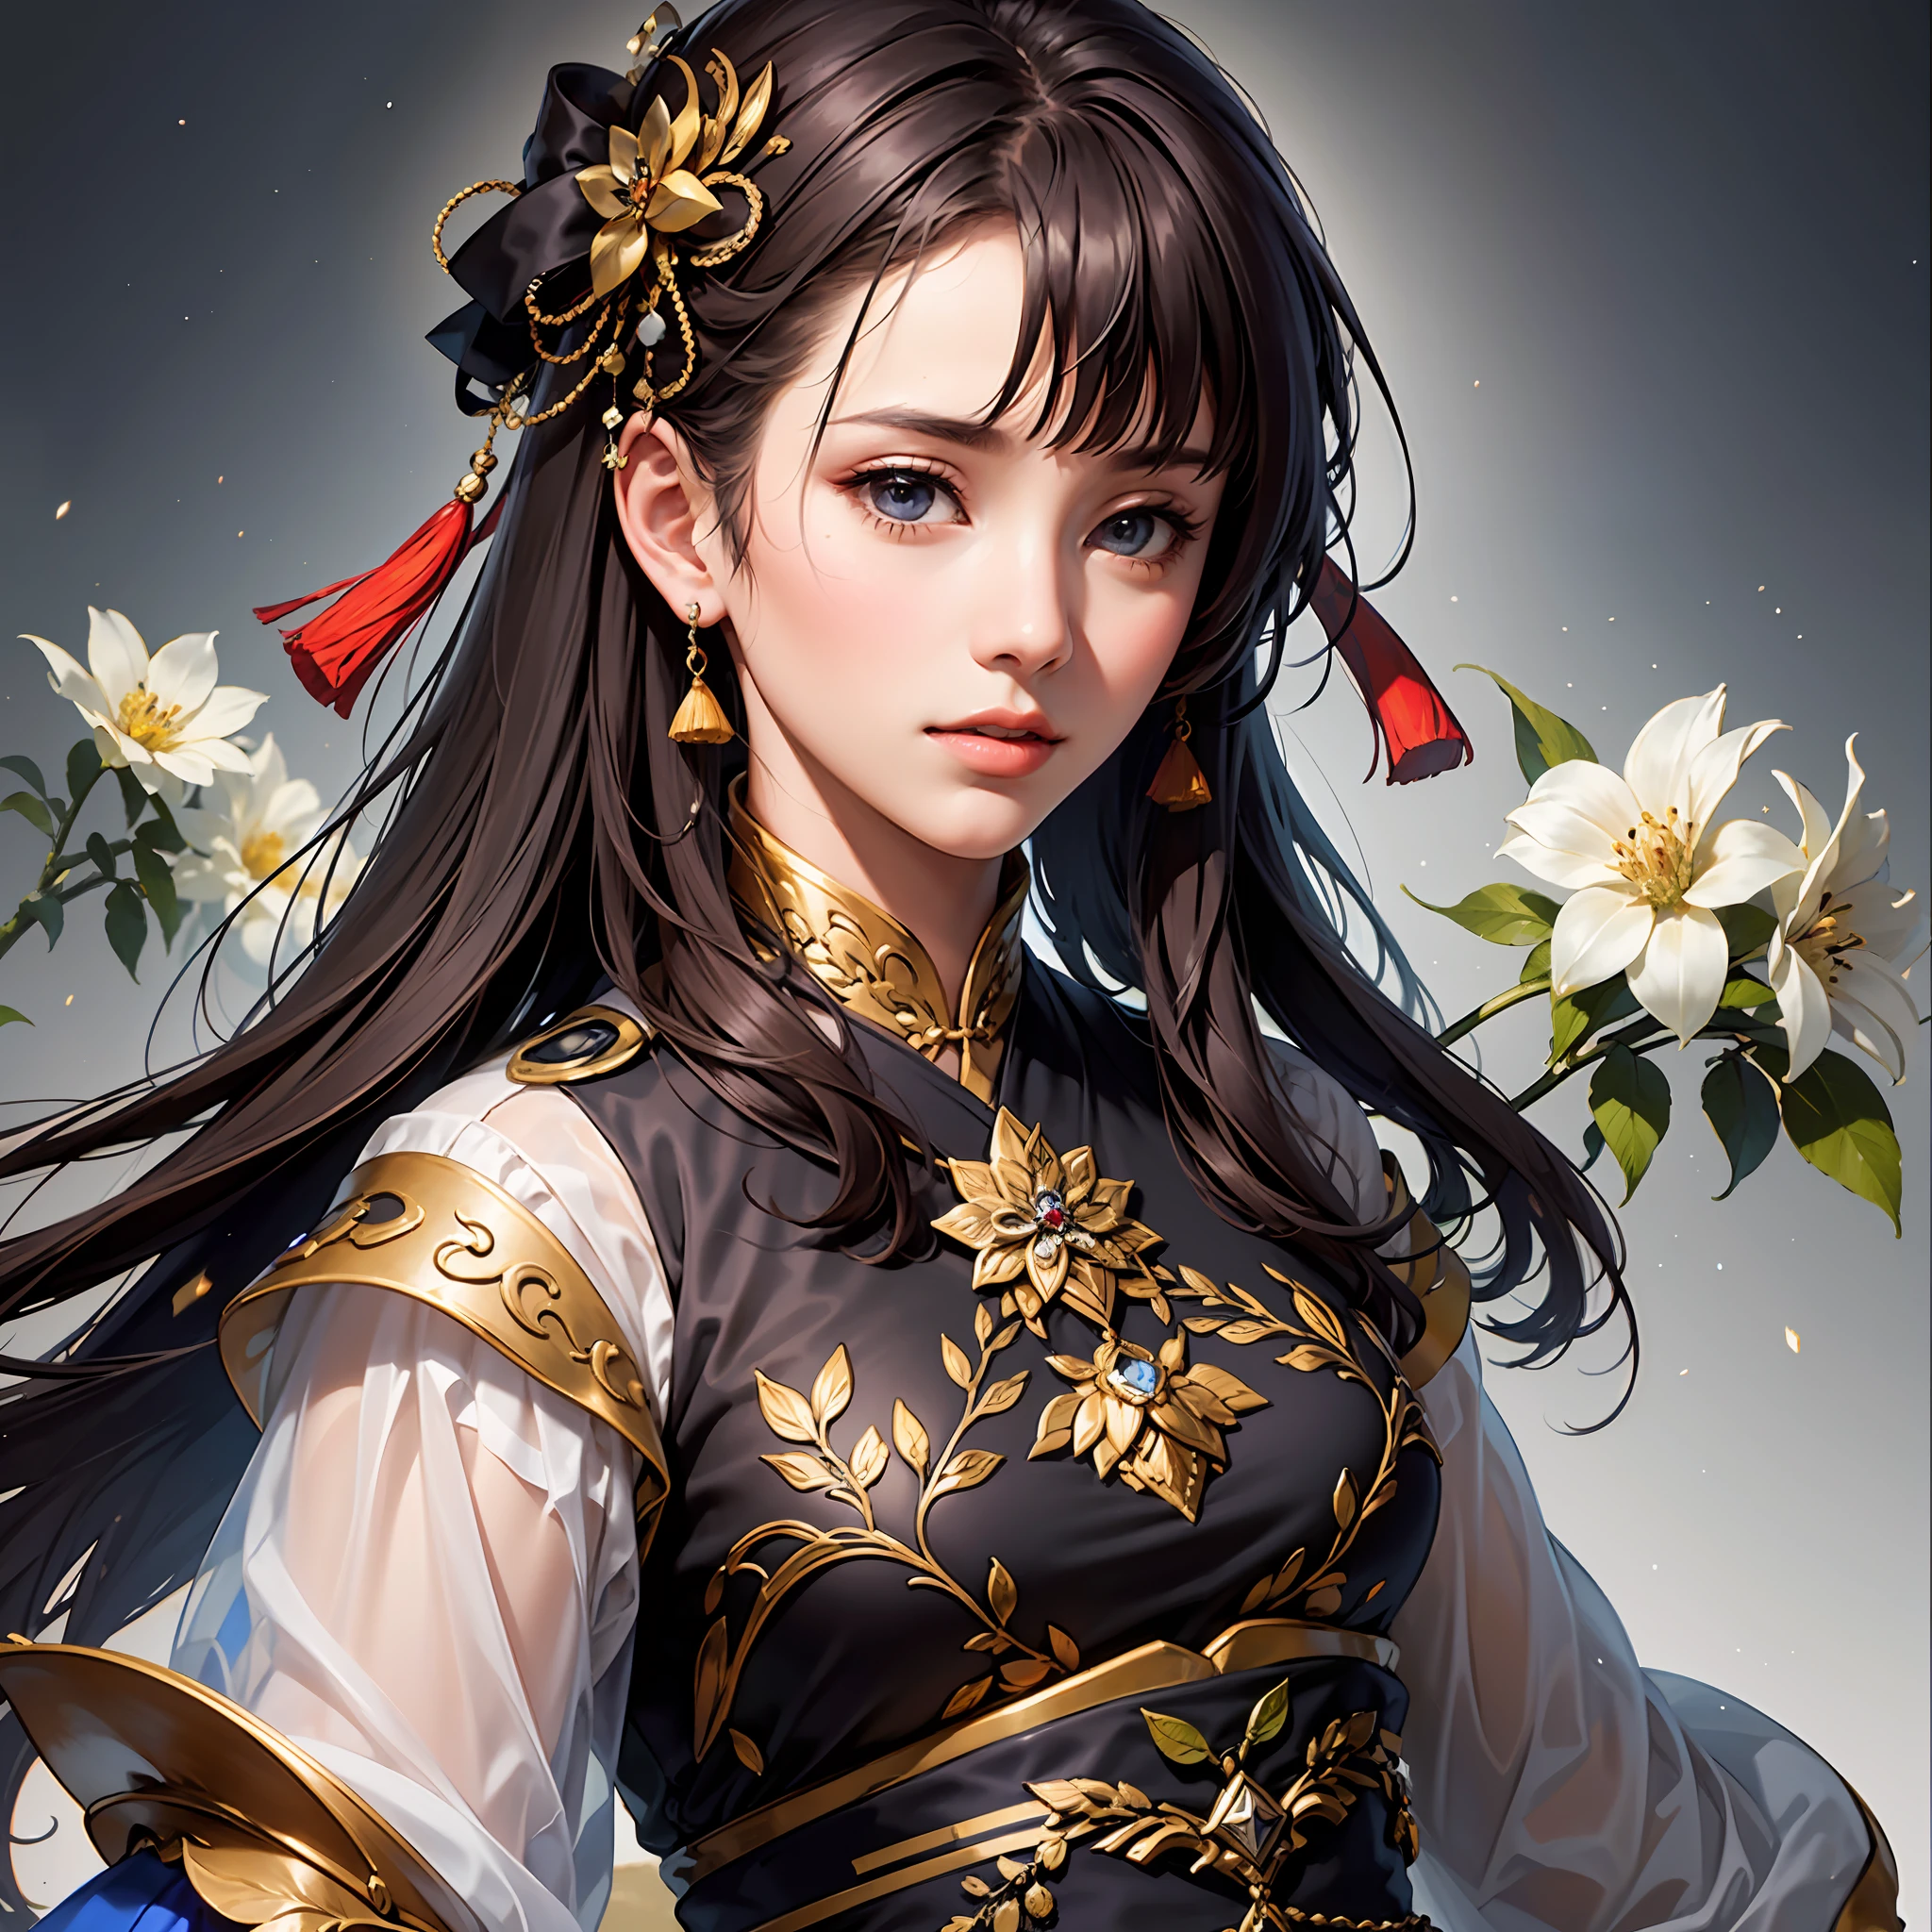 戦国時代, 女性将軍, とても美しい顔, 高ダイナミックアングル, 8k, とても繊細, 非常に濃い, 鮮やかな色, ダイナミックな壁紙 日本の着物と中国の漢服のMIX, 美しい黒髪,